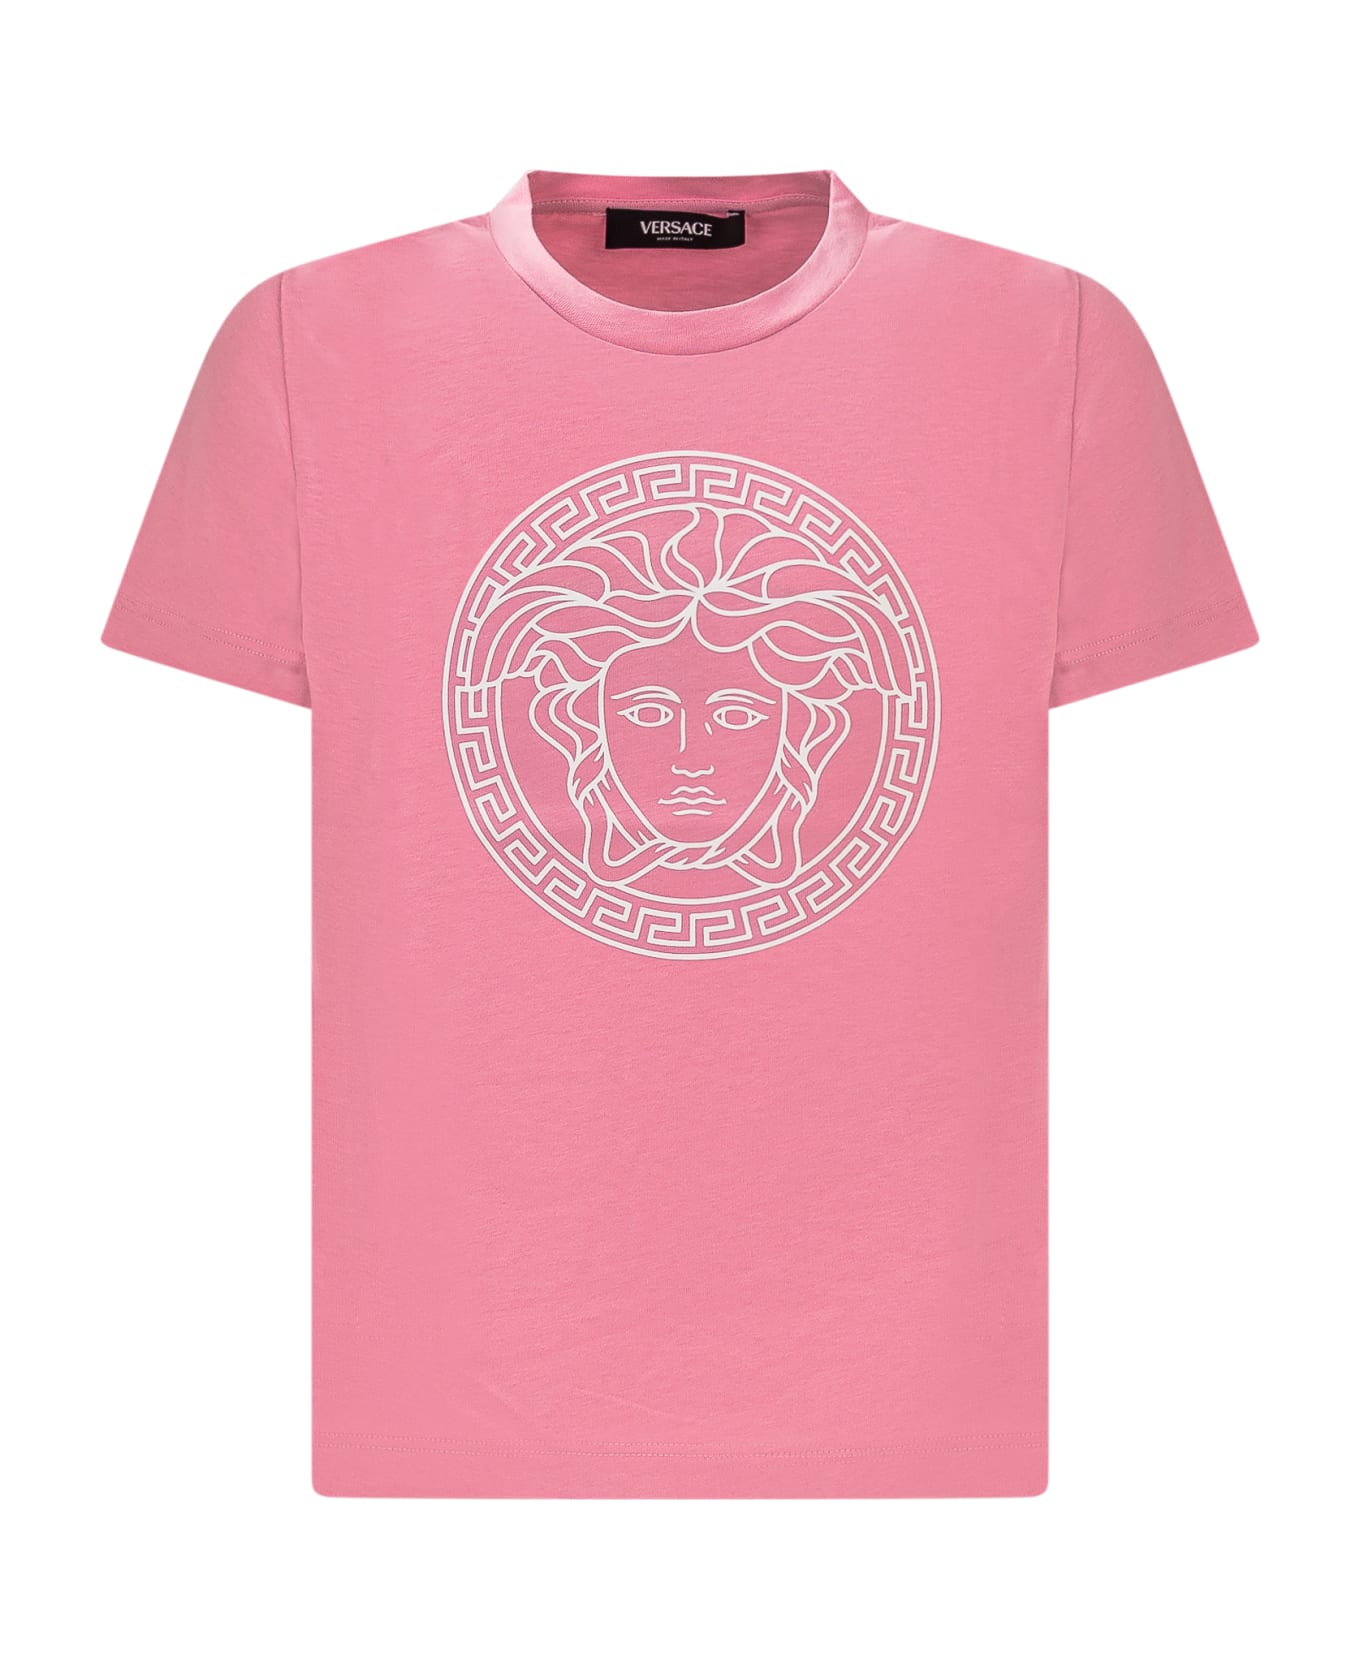 Young Versace T-shirt With Logo - TUTU PINK-BIANCO